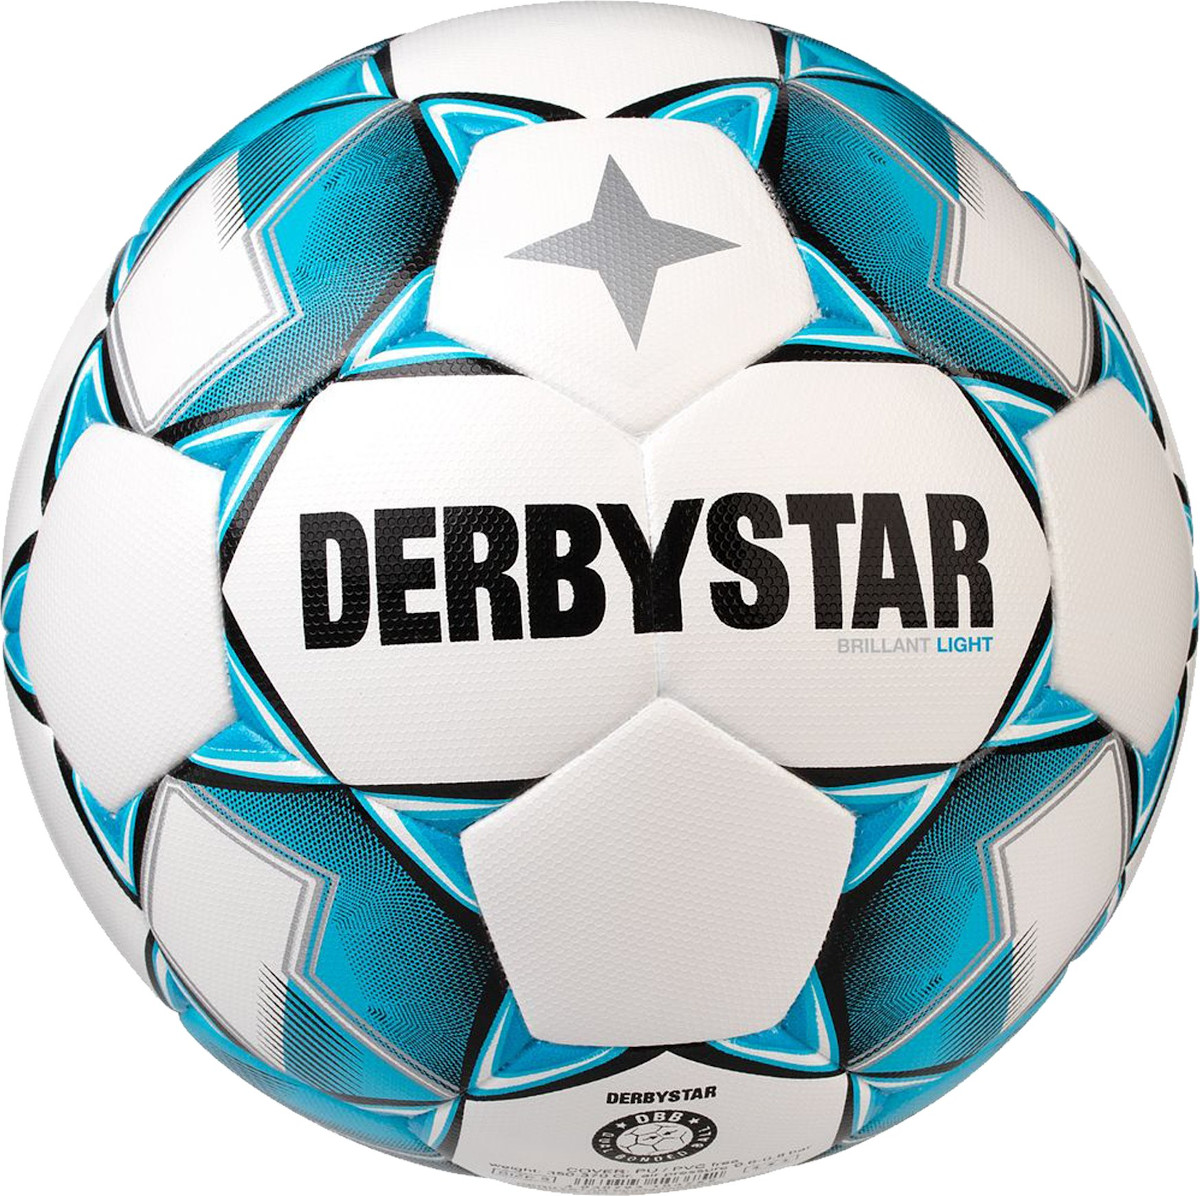 Piłka Derbystar Brilliant Light DB v20 350g training ball